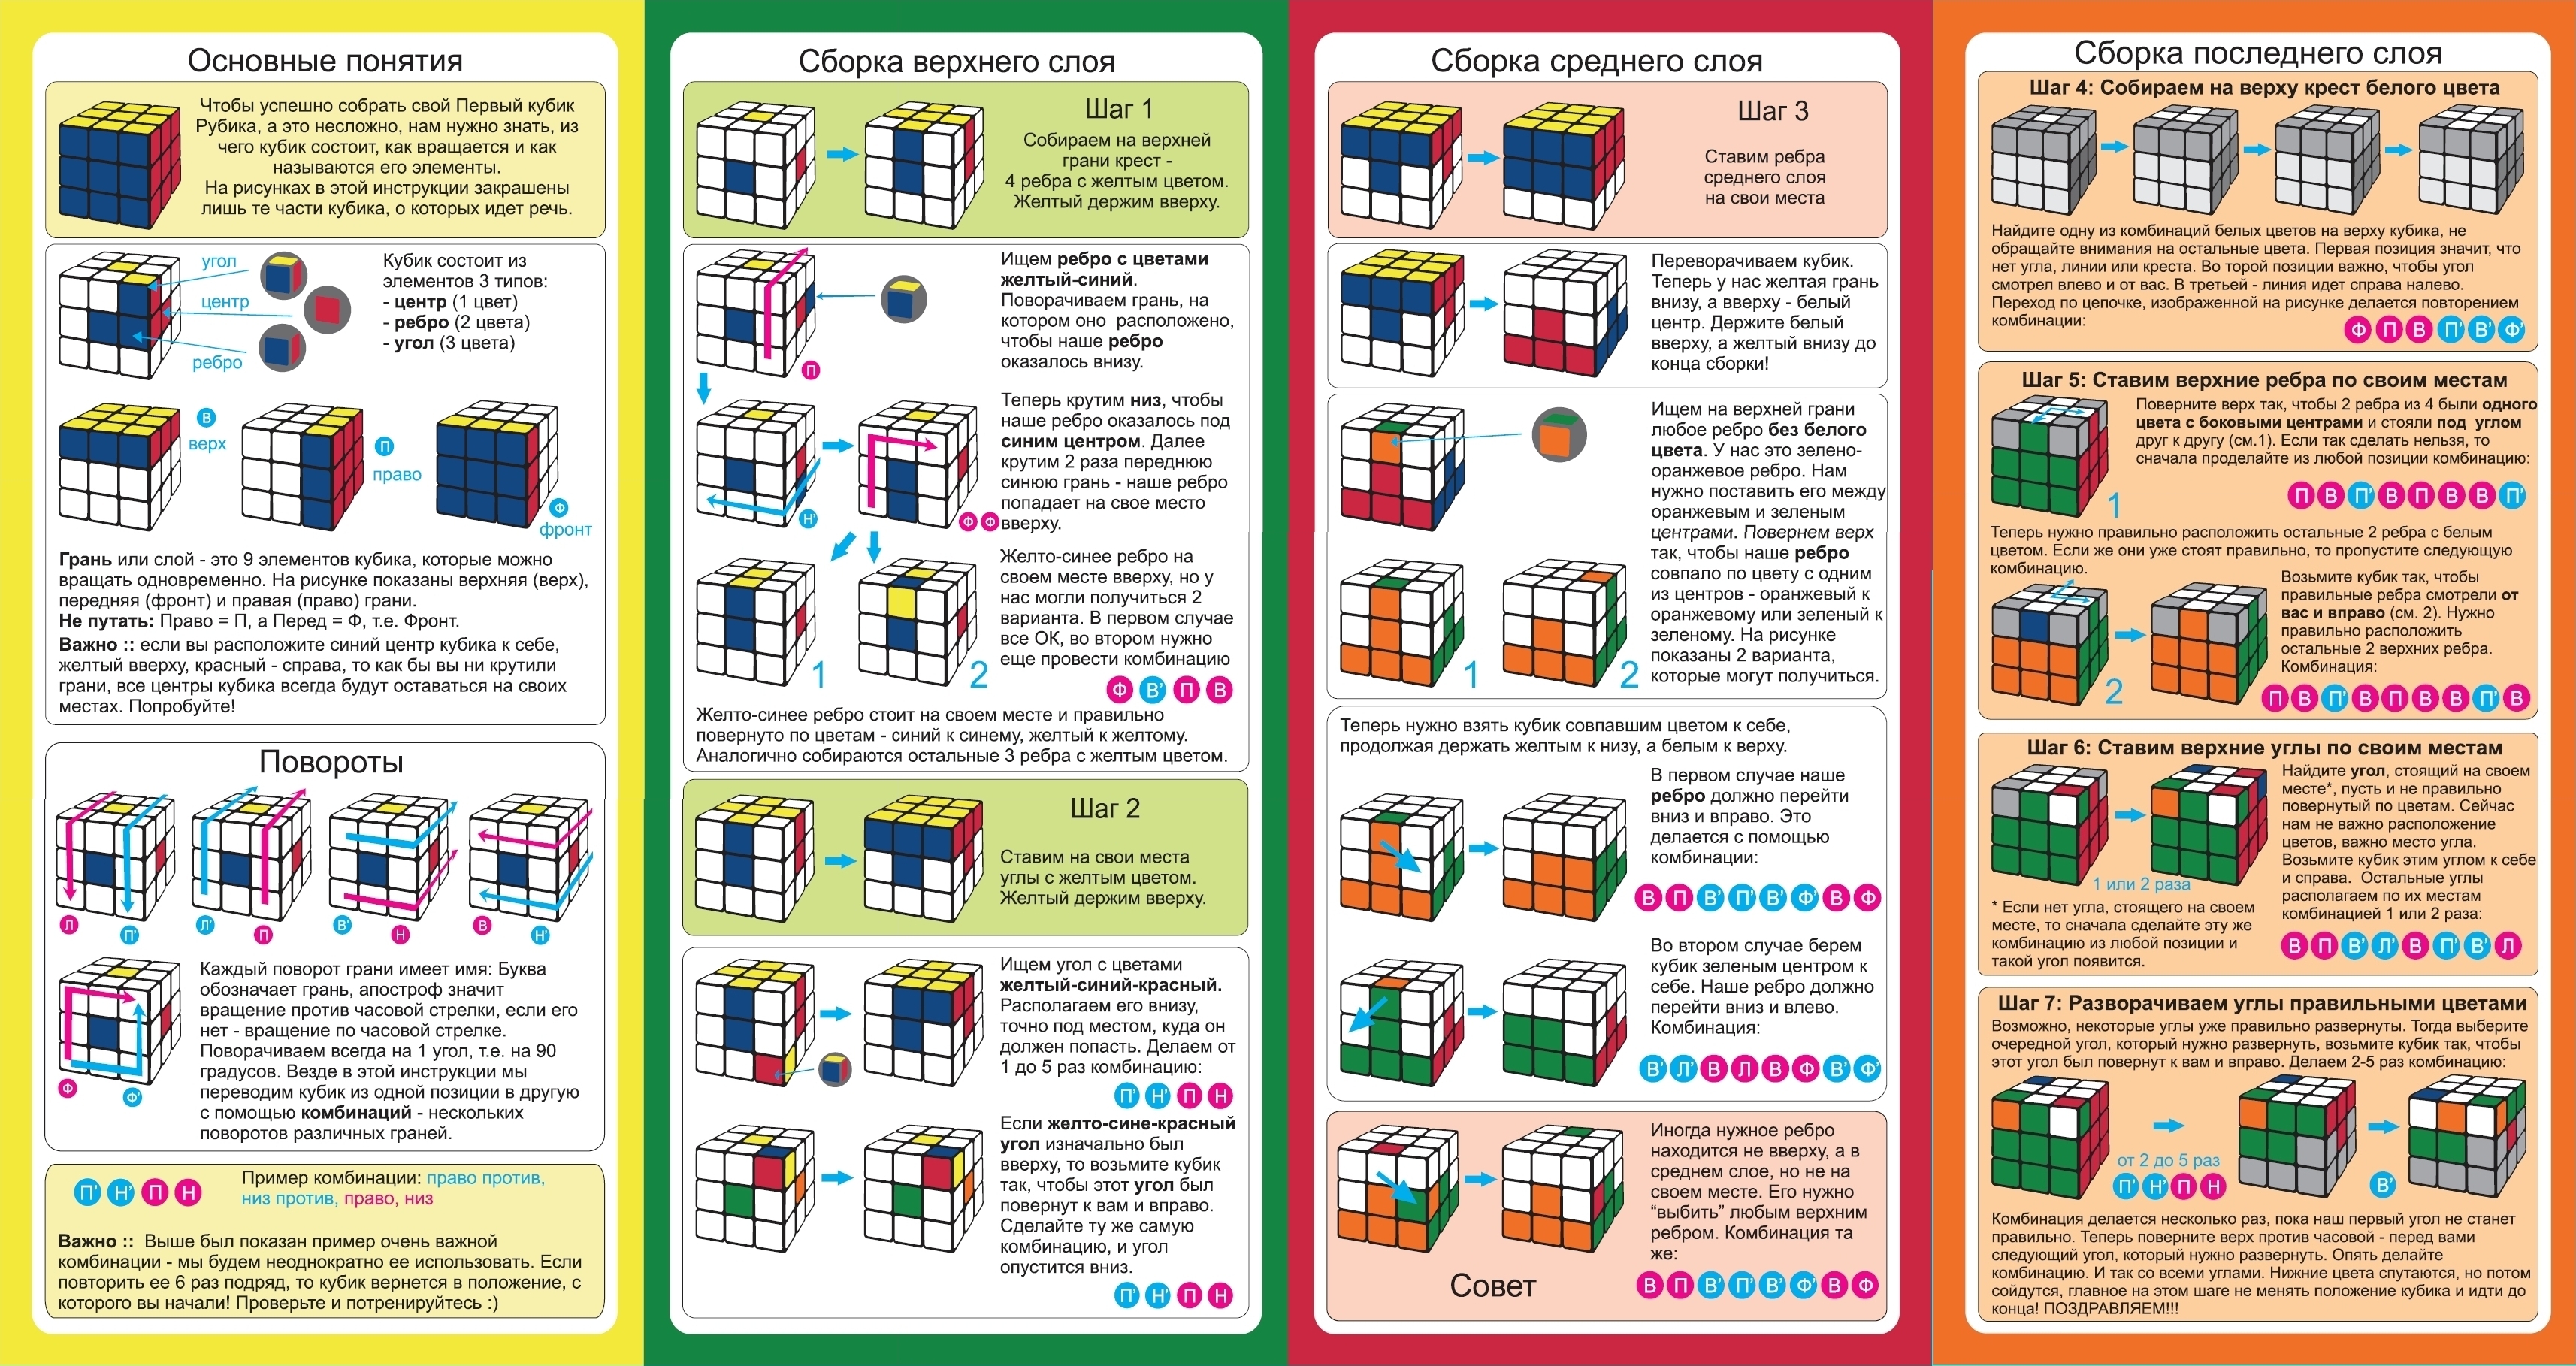 Пошаговую сборку для начинающих. Инструкция кубик Рубика 3х3 для начинающих схема. Алгоритм по сборке кубика Рубика 3х3 для начинающих. Сборка кубика Рубика 3х3 схема сборки для начинающих пошагово. Инструкция сборки кубика Рубика 3х3.